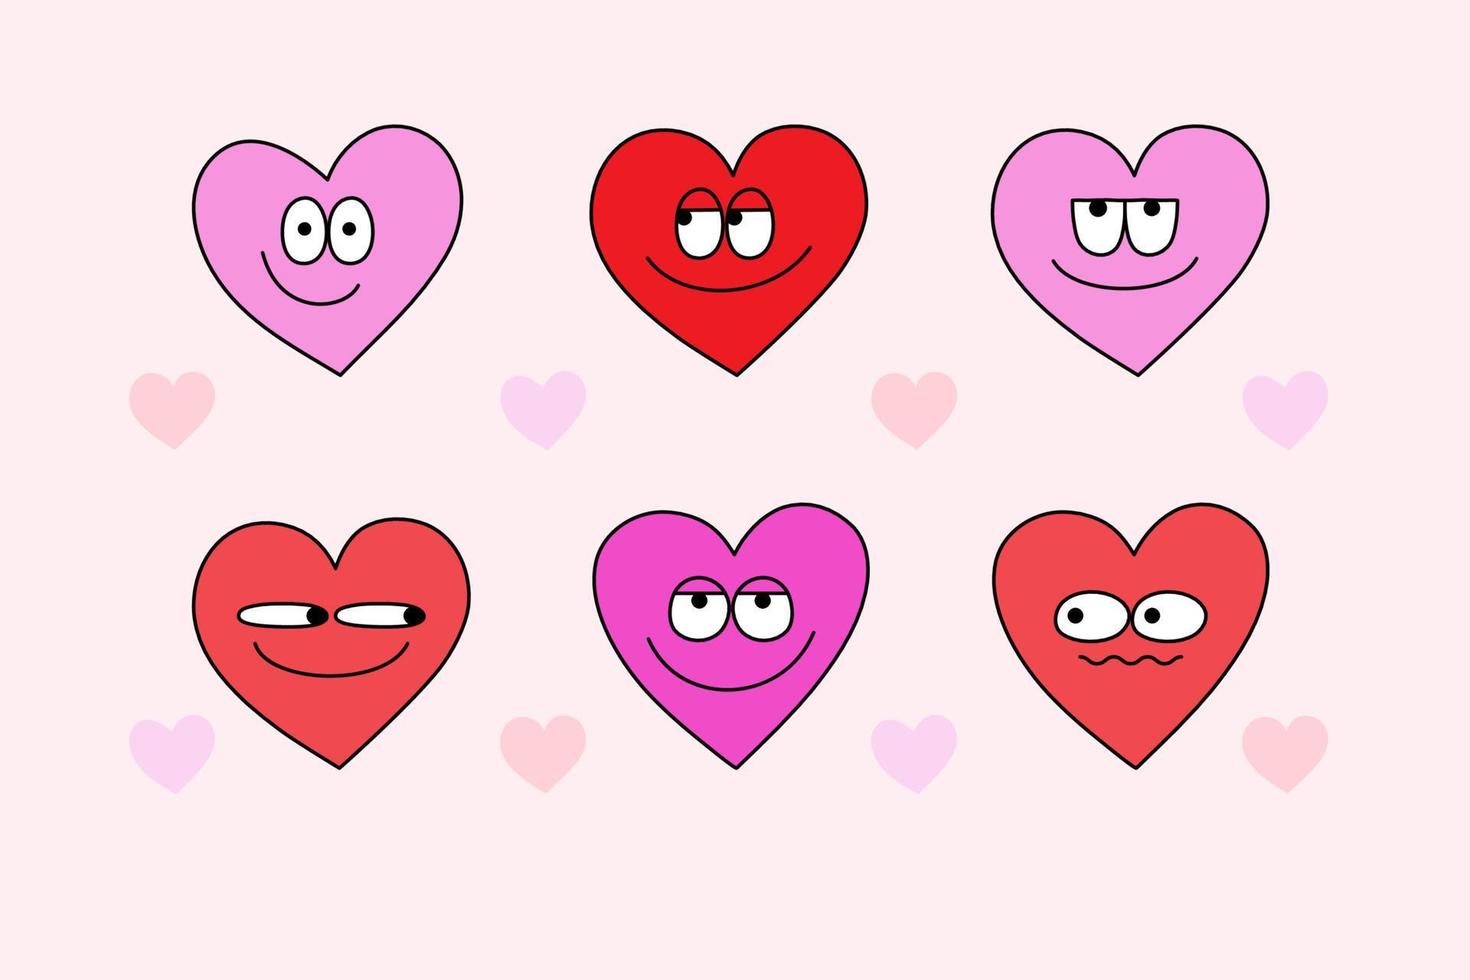 Juego de personajes de dibujos animados de corazón maravilloso de los años 70. pegatinas de corazón funky dibujadas a mano en estilo retro para tarjetas de felicitación del día de san valentín. vector